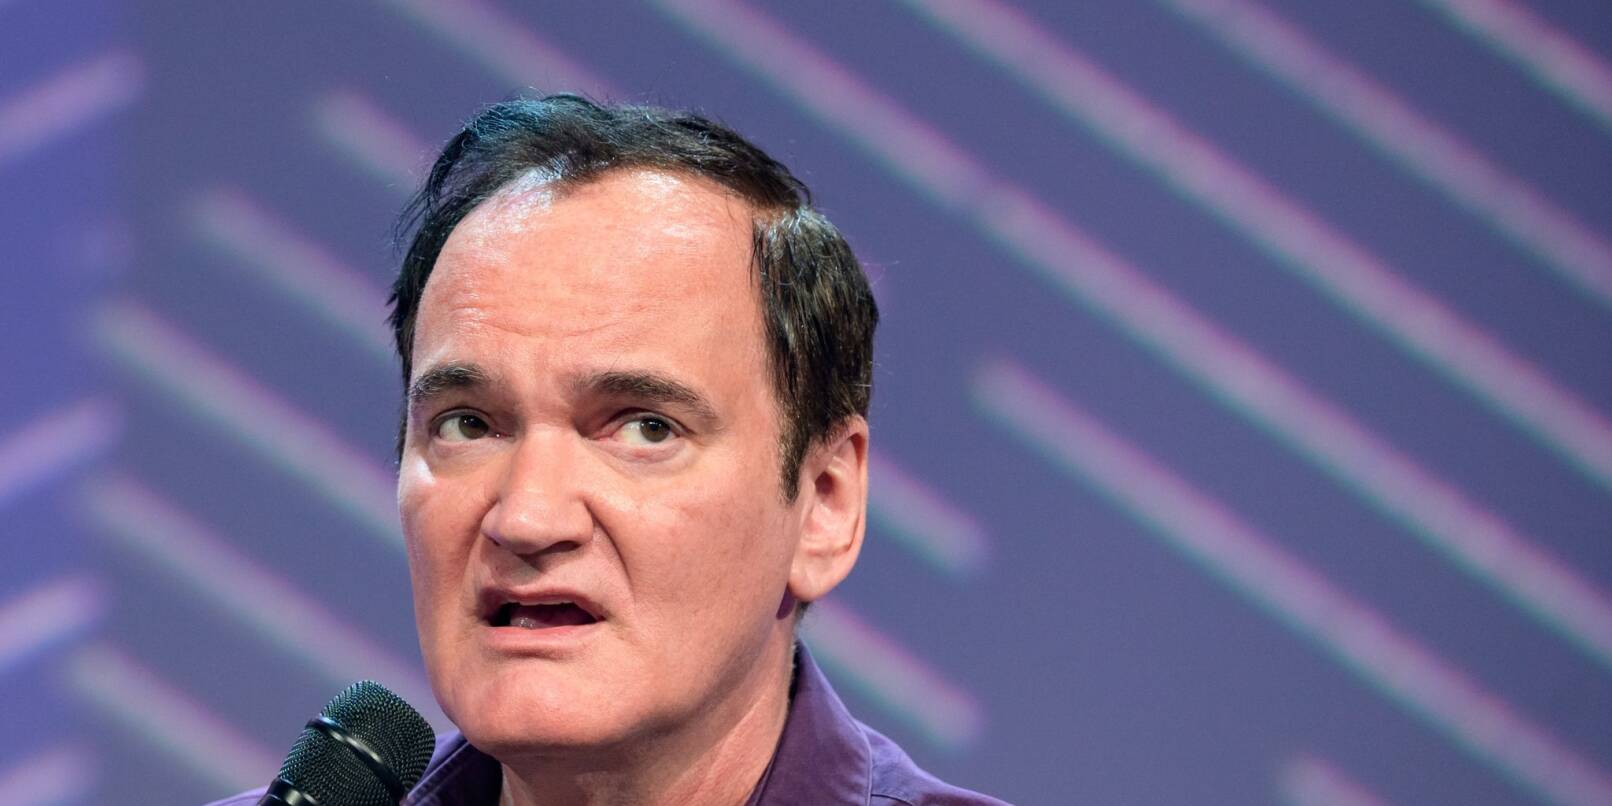 Der Regisseur Quentin Tarantino will nach seinem zehnten Film Schluss machen in Hollywood.